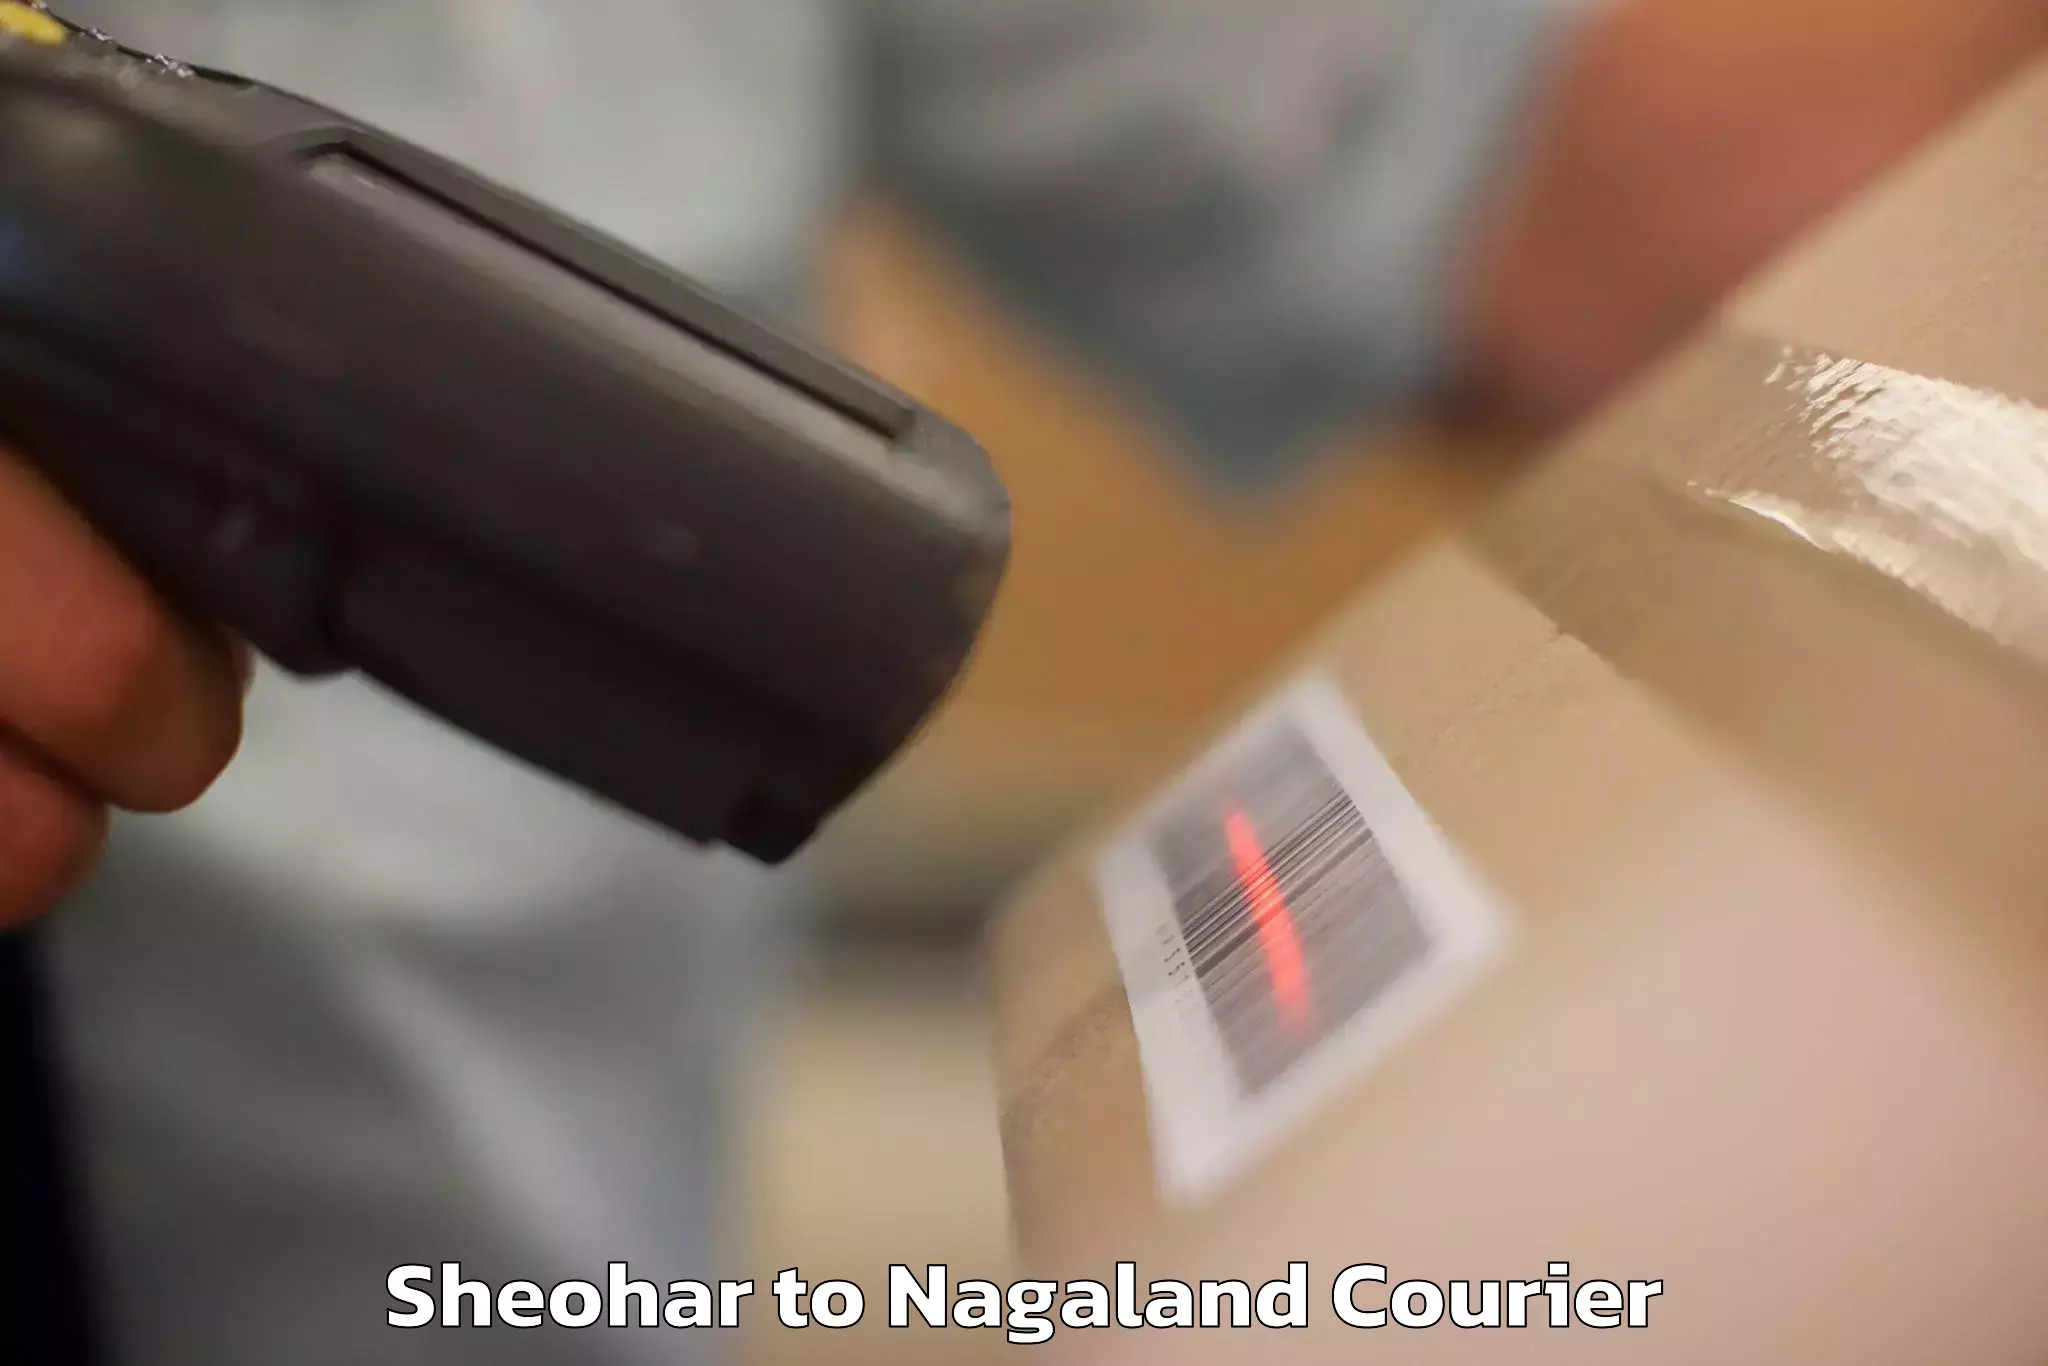 Door-to-door baggage service Sheohar to Nagaland